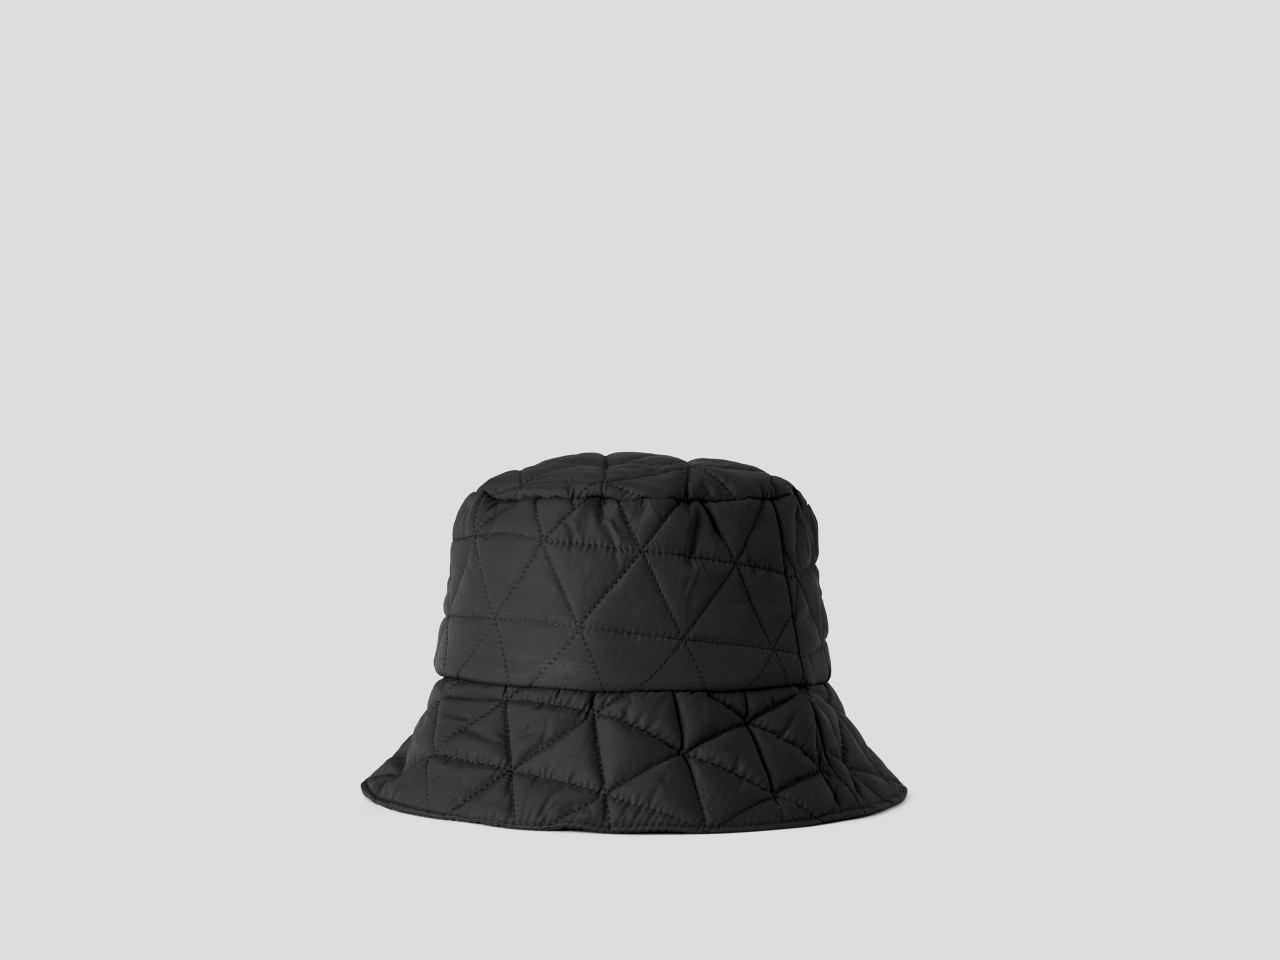 MODA DONNA Accessori Cappello e berretto Giallo sconto 70% Benetton Visiera in lana color senape Giallo Unica 